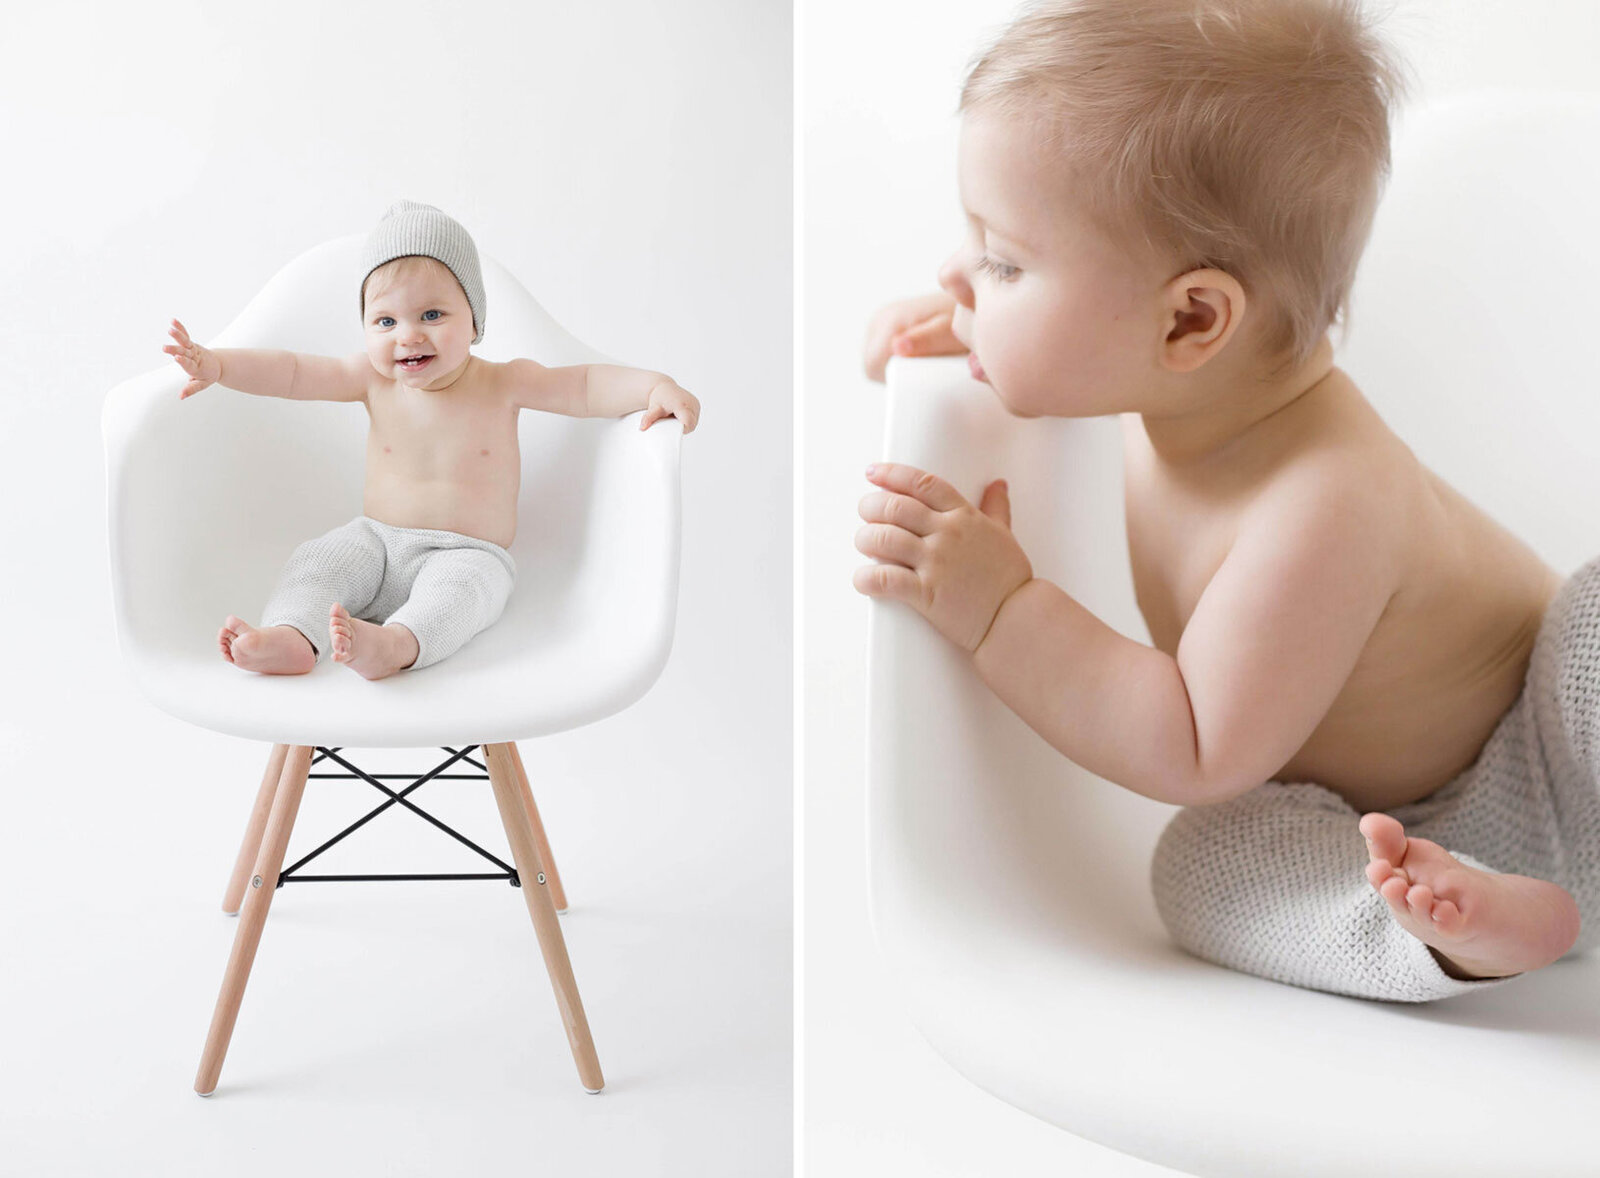 Babyshooting bei Verl. Collage baby auf stuhl sitzend